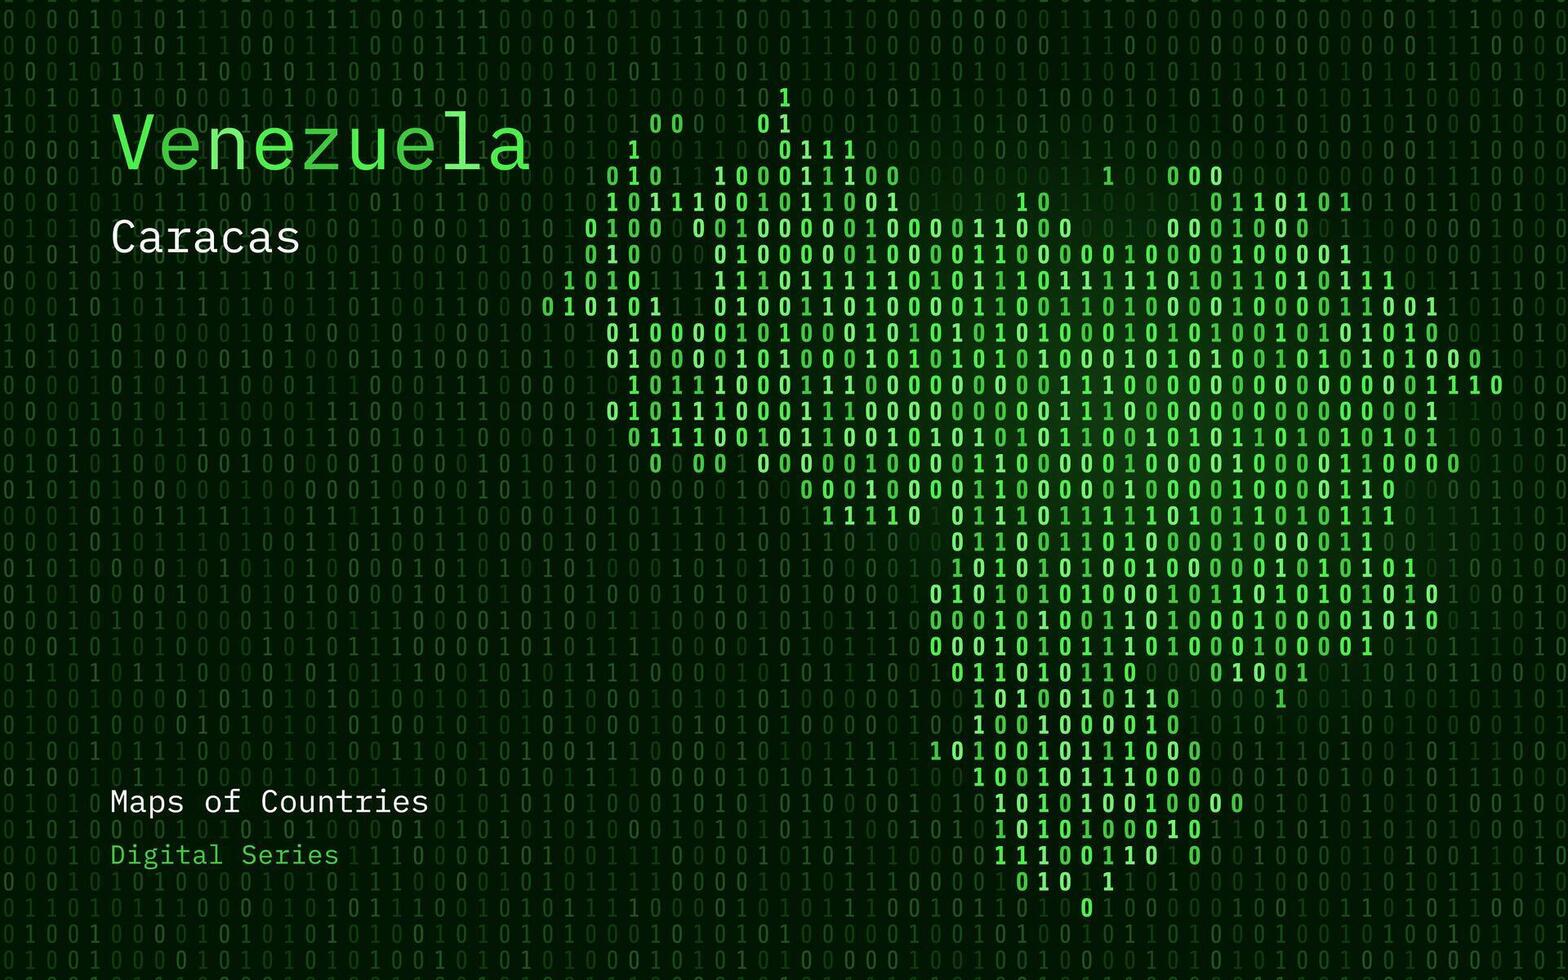 Venezuela kaart getoond in binair code patroon. tsmc. blauw Matrix nummers, nul, een. wereld landen vector kaarten. digitaal serie